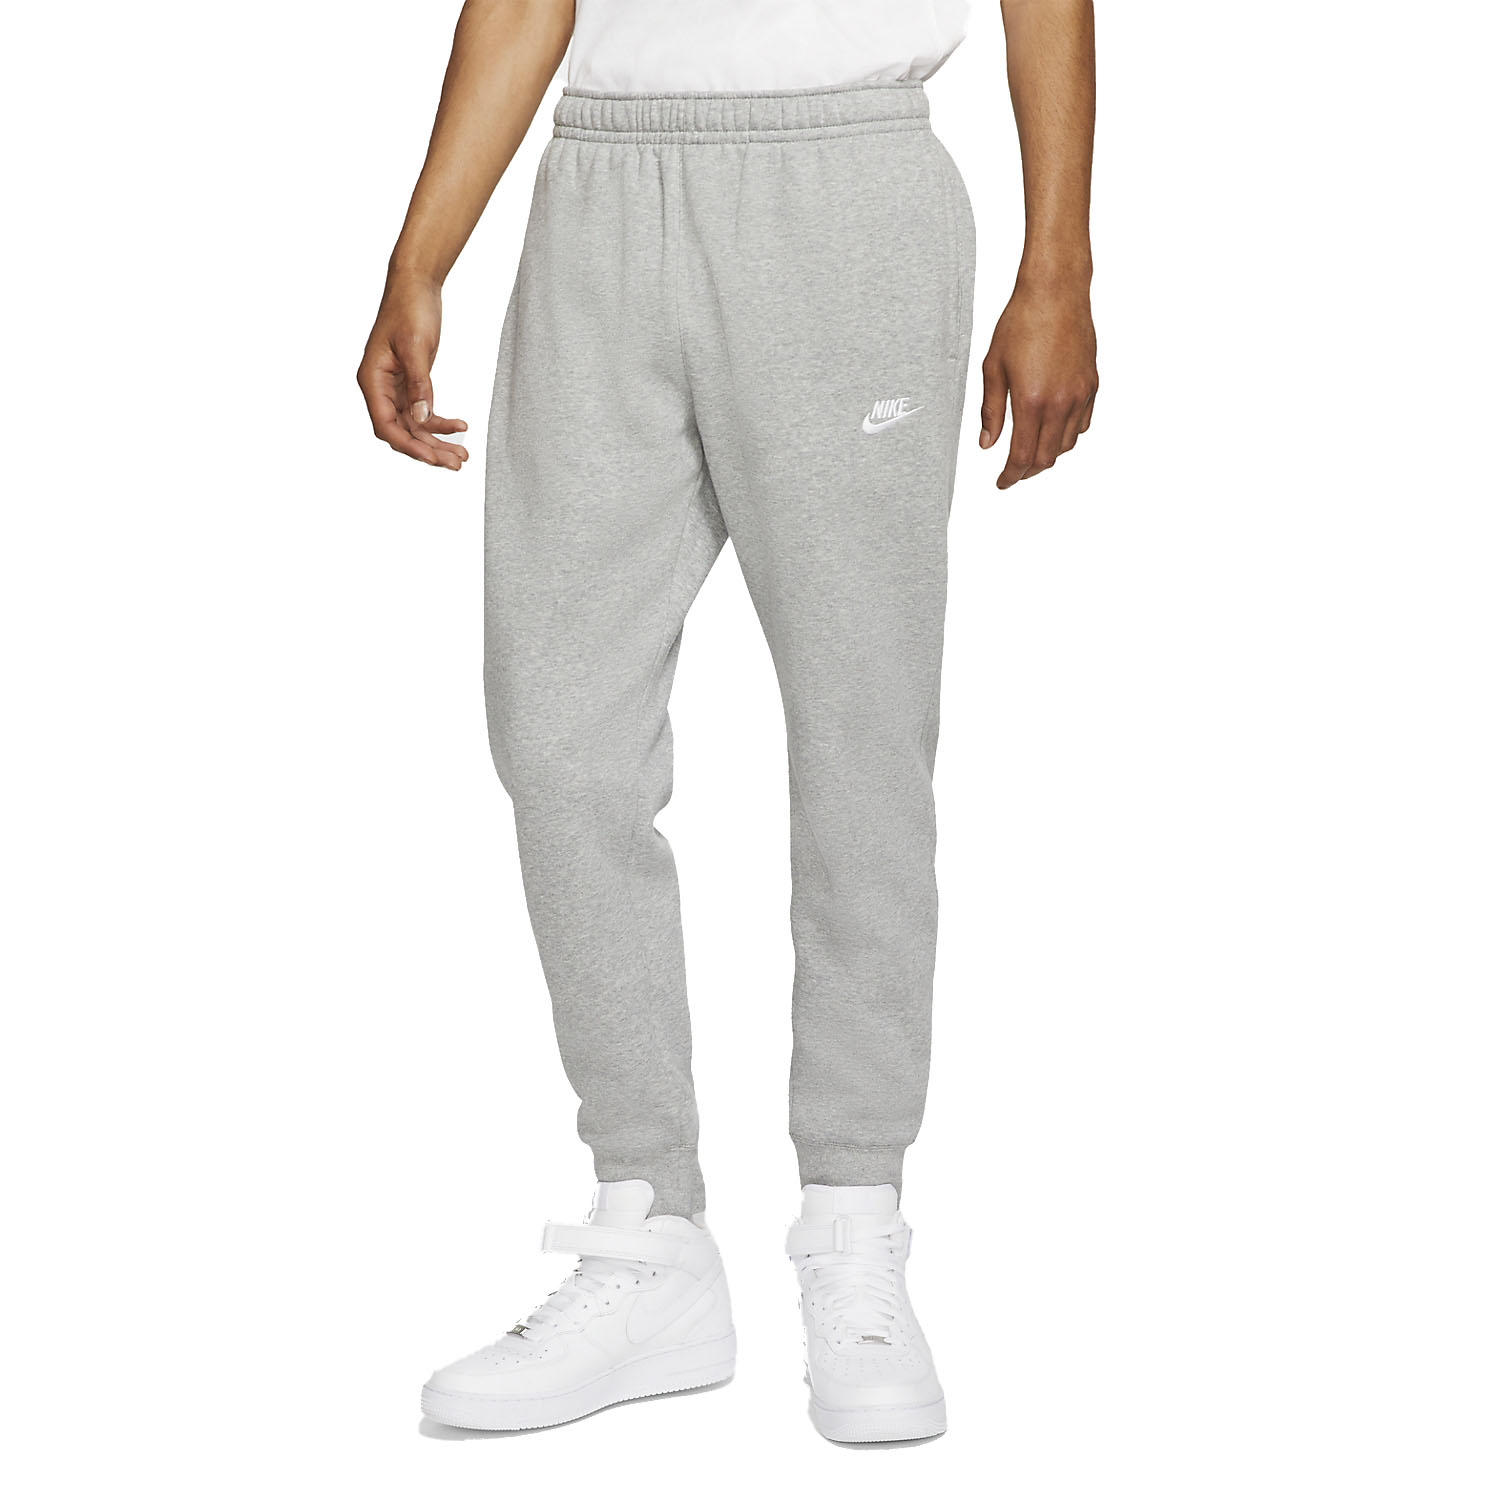 Presta atención a Oficial Masaccio Nike Sportswear Club Pantalones de Tenis Hombre - Dark Grey